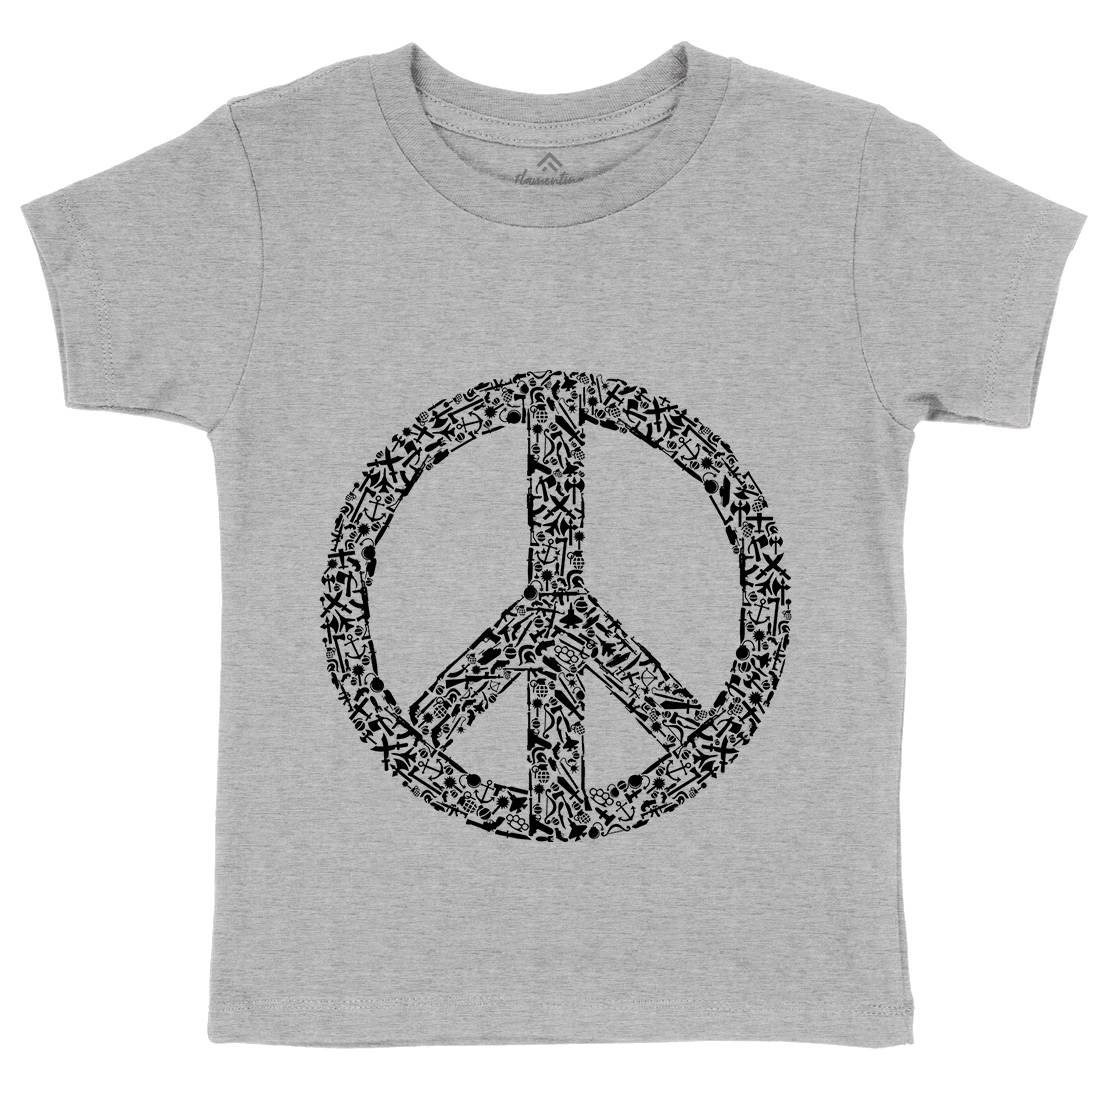 War Kids Crew Neck T-Shirt Peace B093